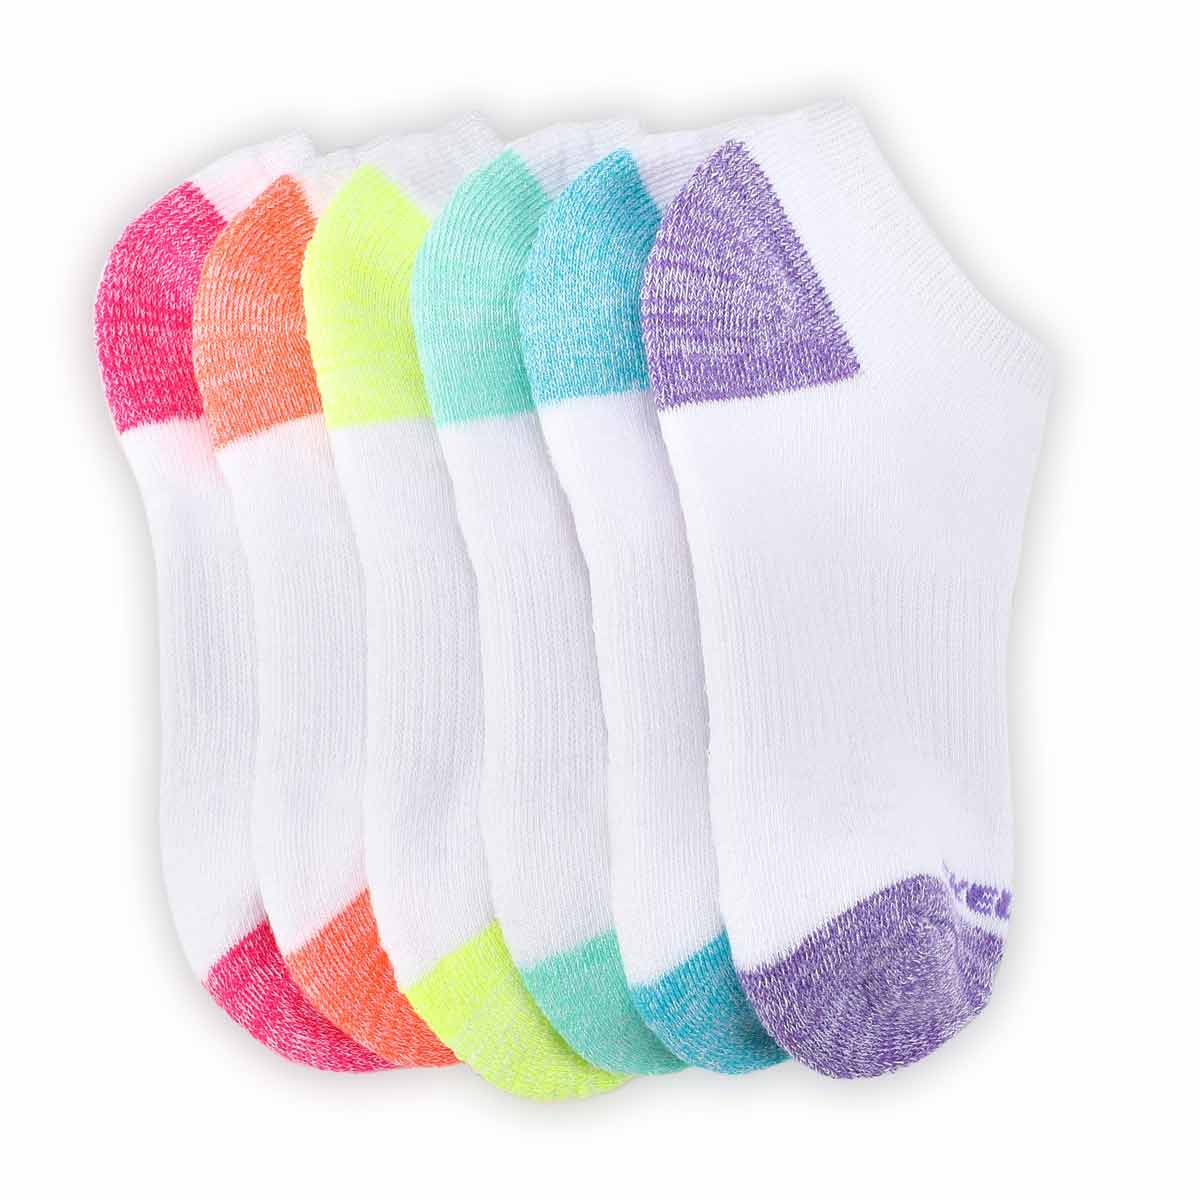 Girls' NO SHOW FULL TERRY MED white socks - 6 pk